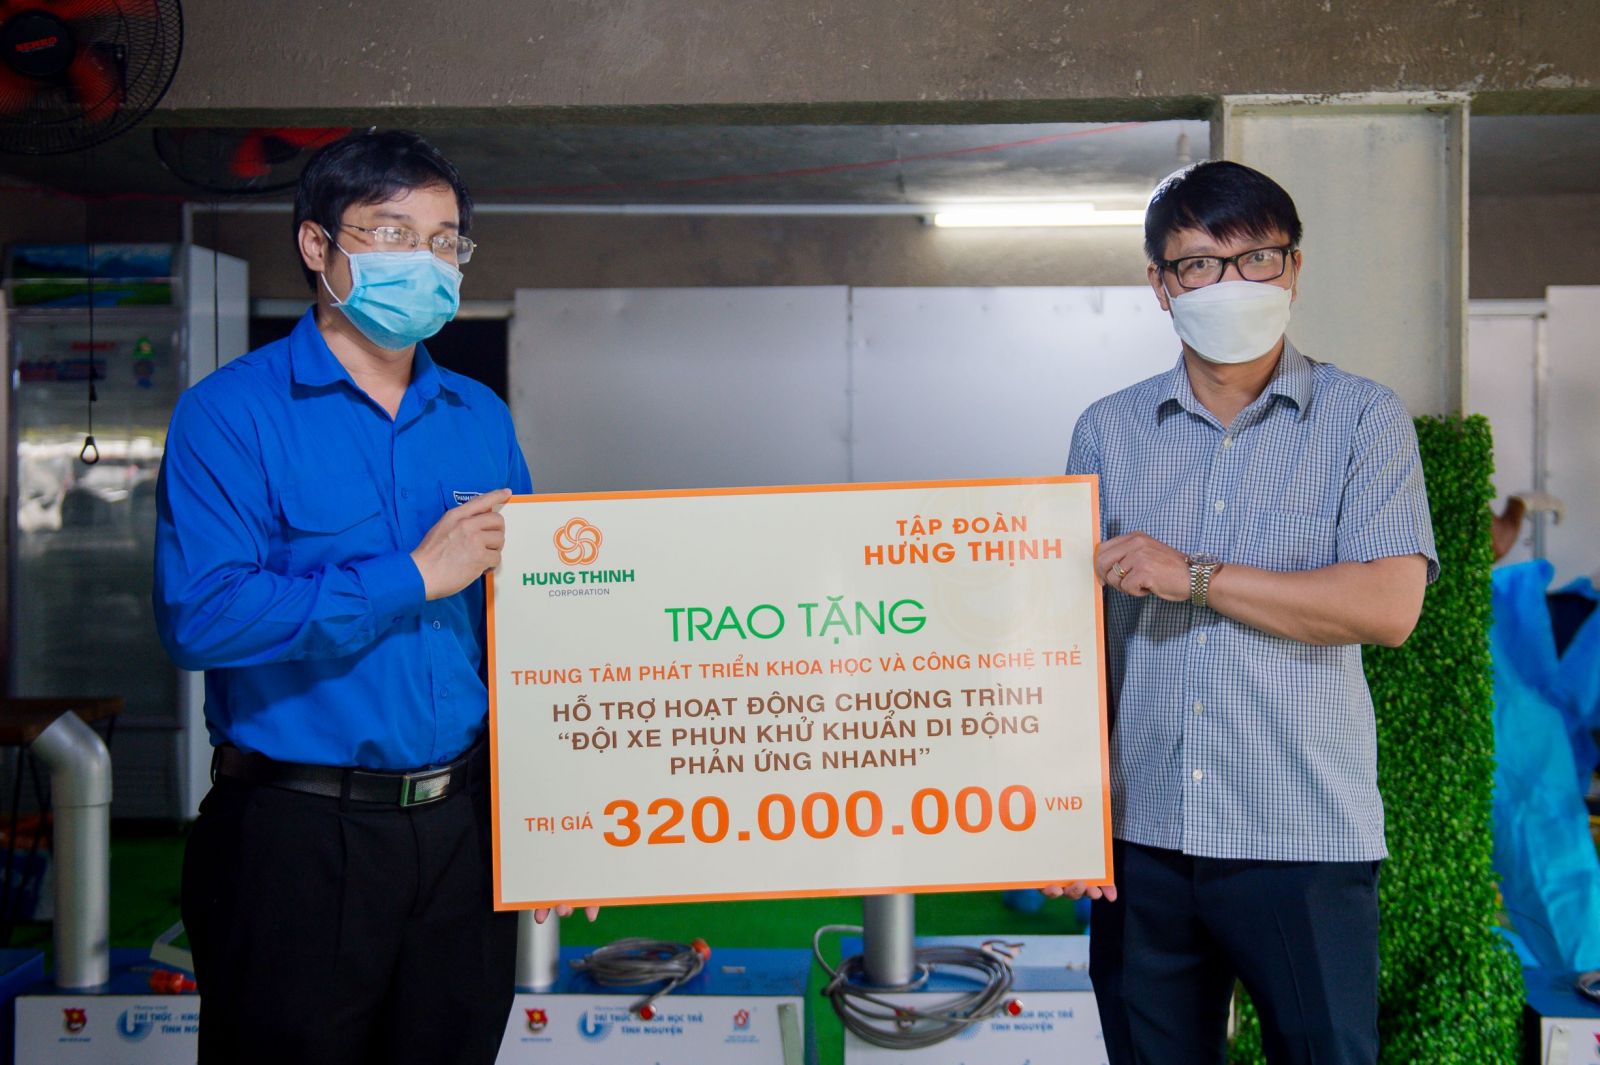 Ông Võ Văn Khang, Phó TGĐ Tập đoàn Hưng Thịnh trao tặng 320 triệu đồng
cho ông Đoàn Kim Thành - Giám đốc Trung tâm Phát triển Khoa học và Công nghệ trẻ, Trưởng BTC chương trình “Đội xe phun khử khuẩn di động phản ứng nhanh”